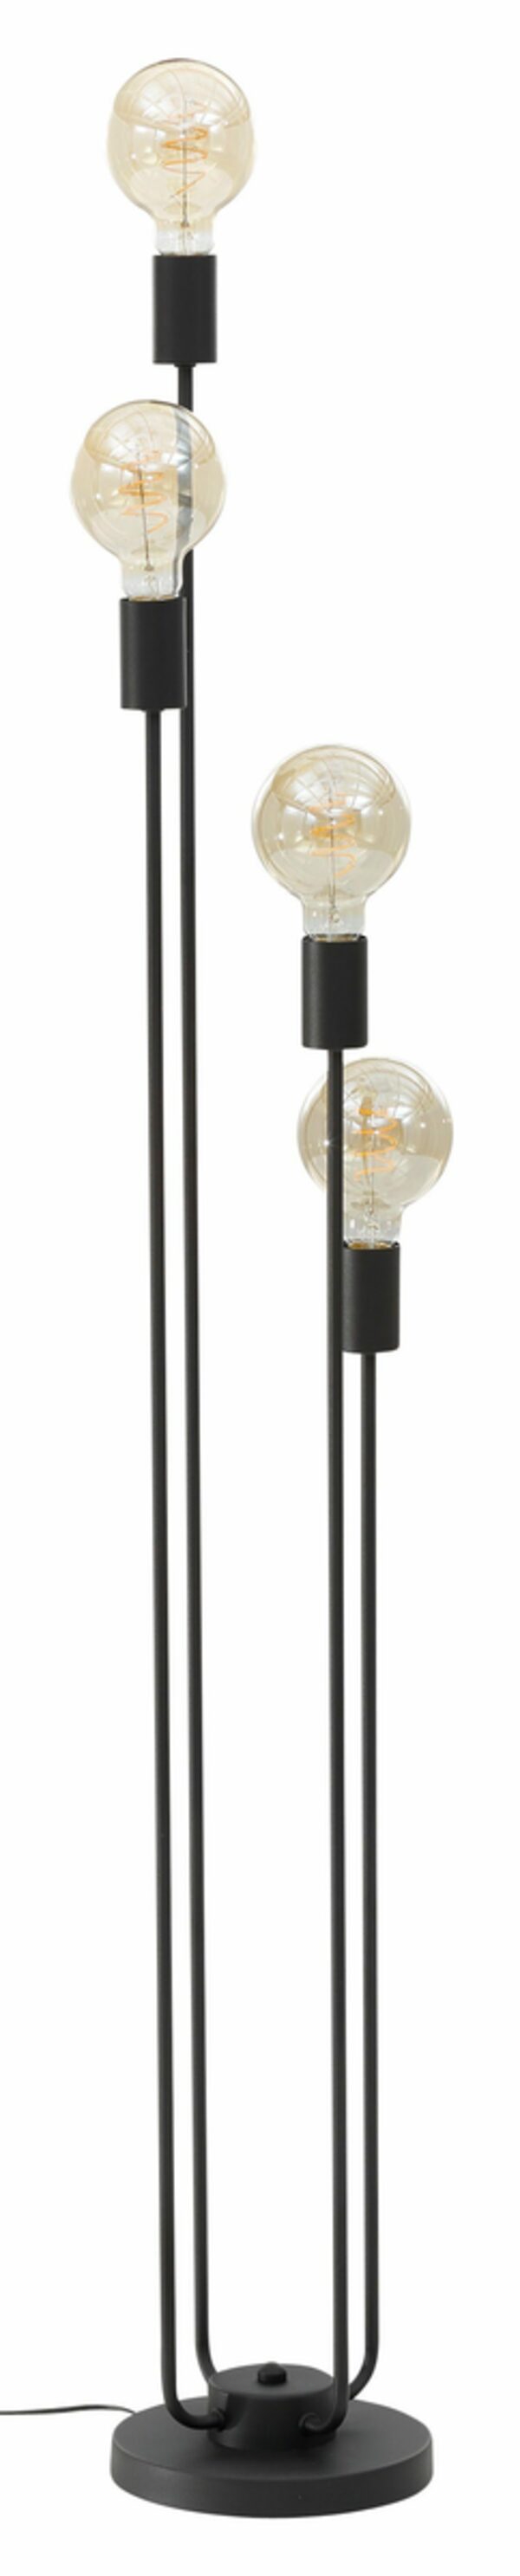 Bild 1 von Leonique Stehlampe Jarla, ohne Leuchtmittel, Stehleuchte mit goldfarbenen/schwarzen Fassungen, Höhe 137 cm